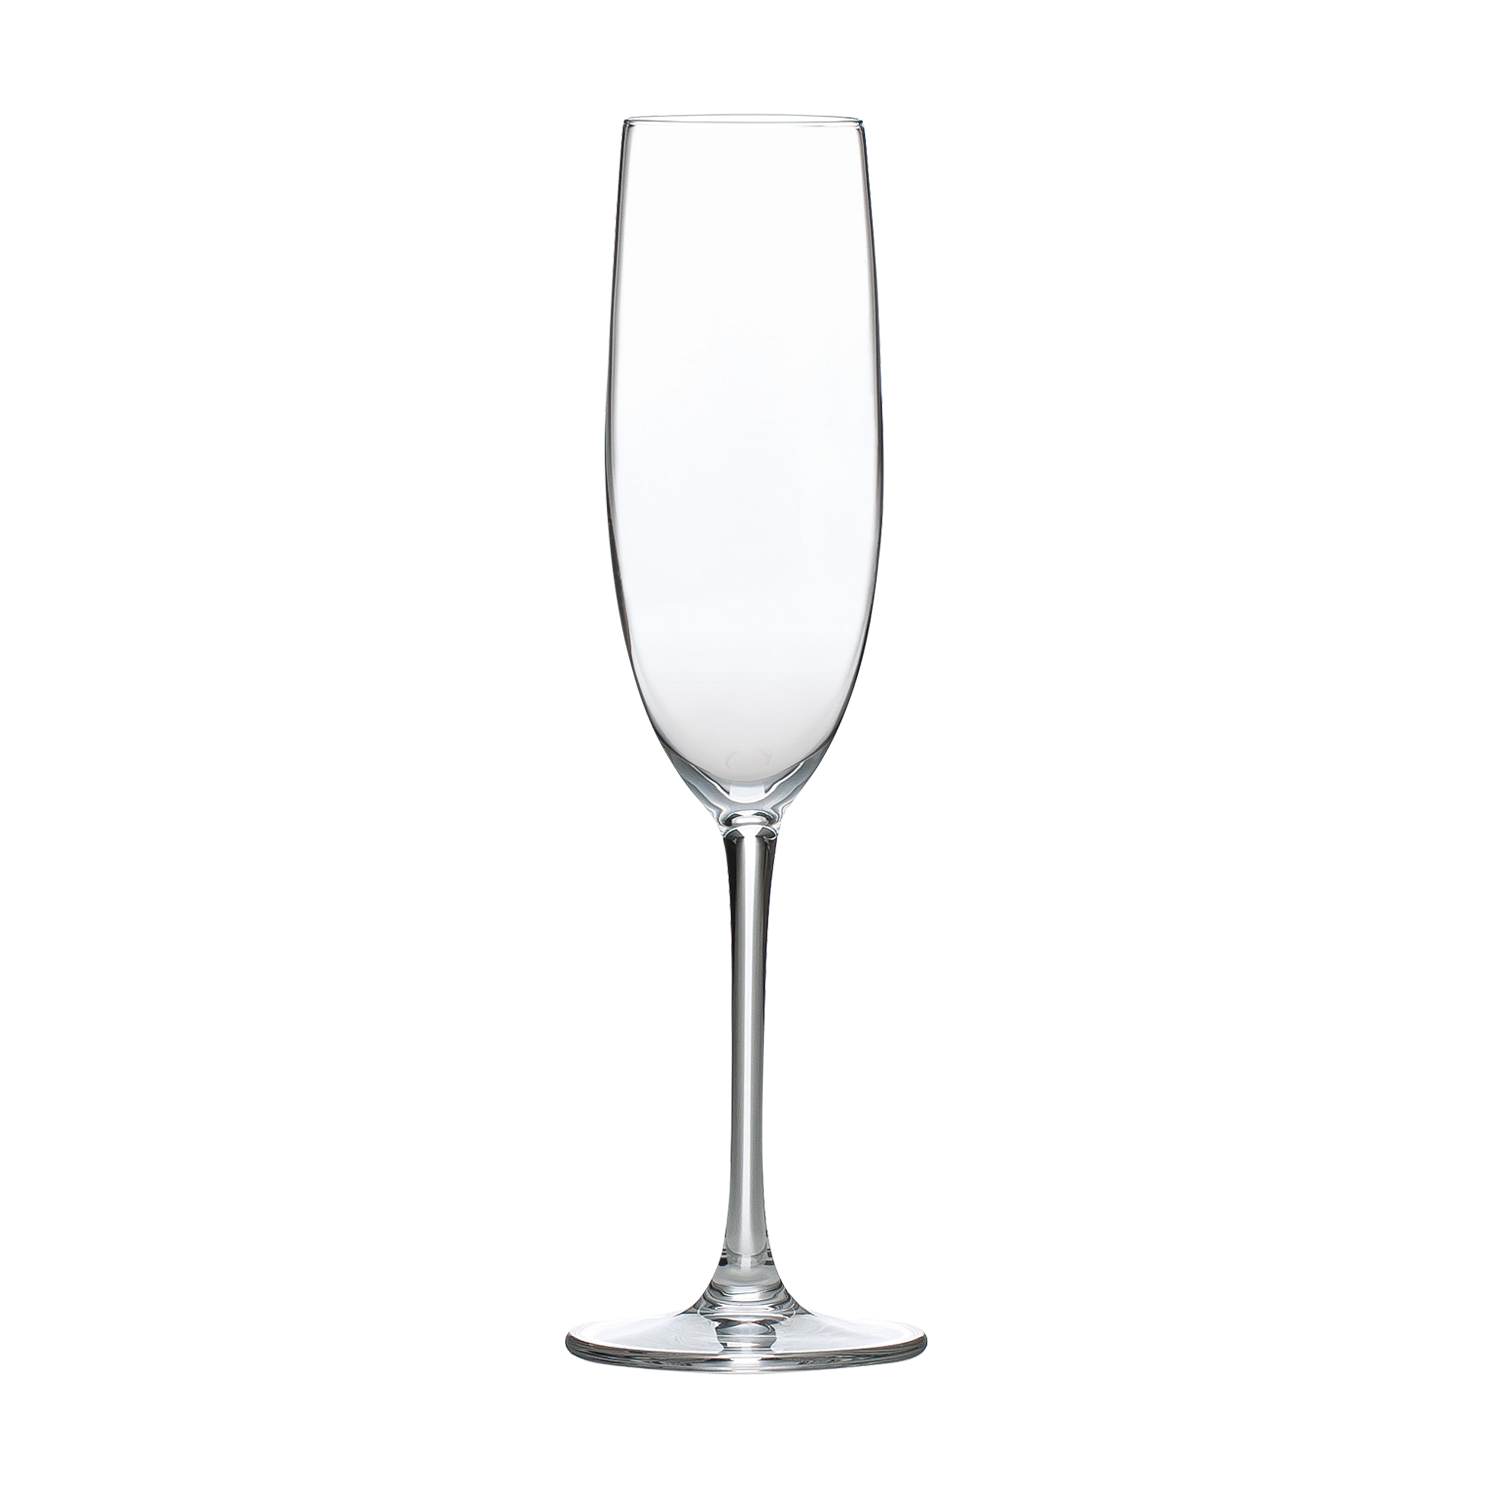 オブリーク シャンパンフルートグラス 10202 送料無料 飲食店 6個入 業務用 新品 130cc